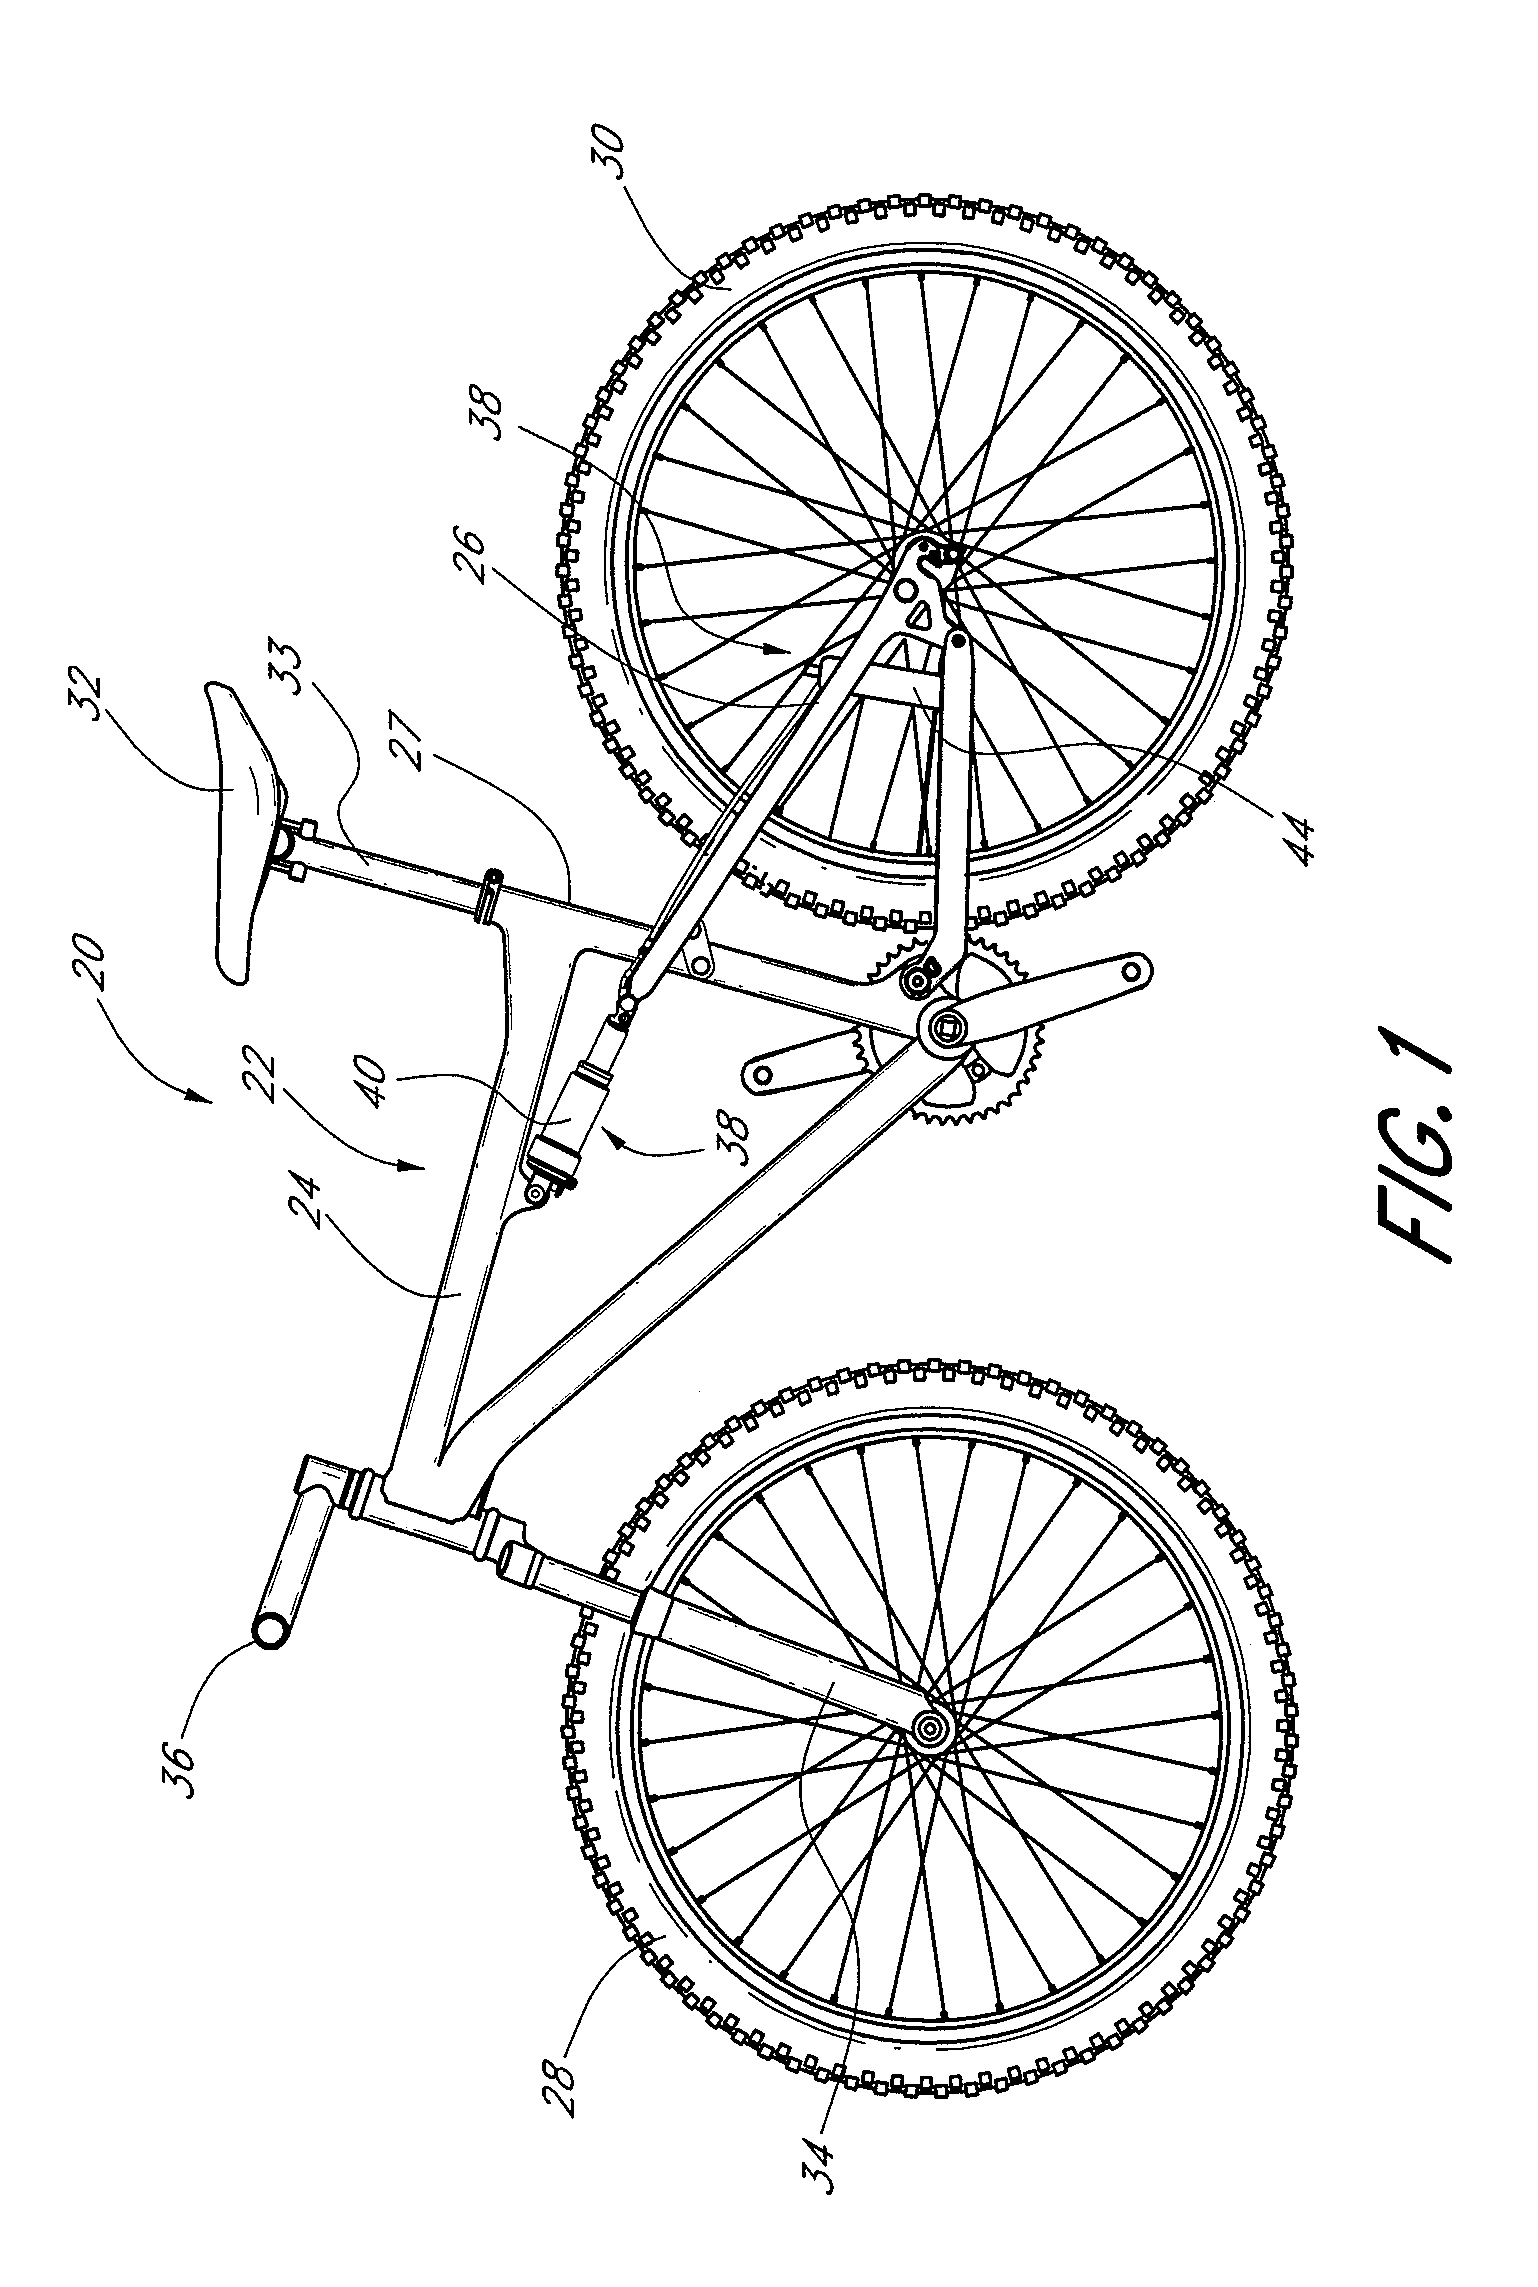 Bicycle damper